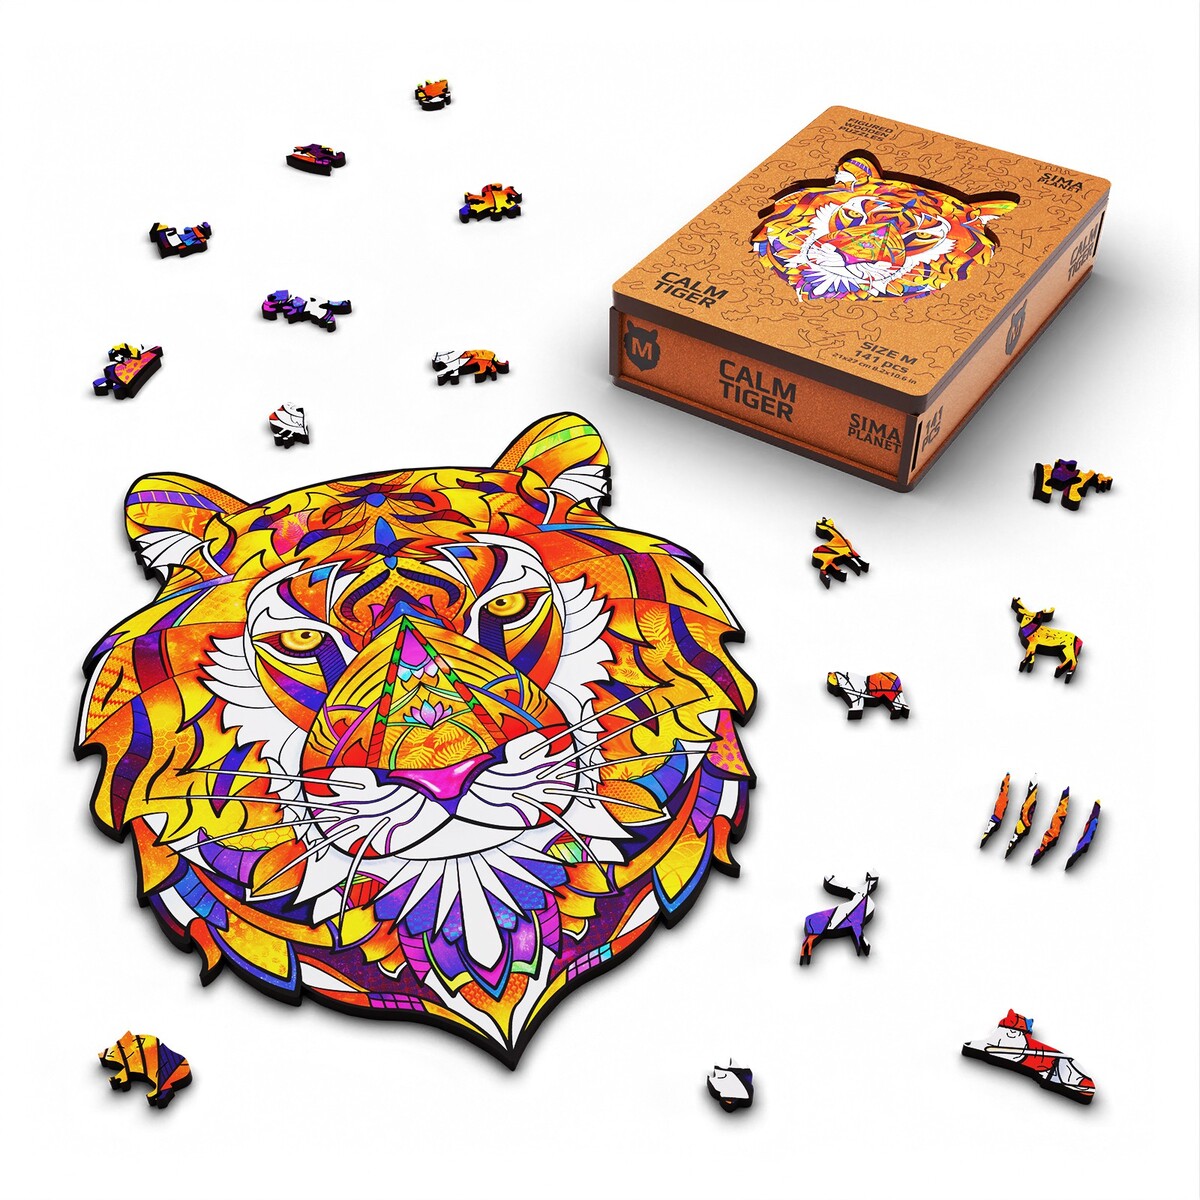 Пазл фигурный деревянный calm tiger, размер 21х27 см, 141 деталь hobby day 3d пазл магический кристалл слон 41 деталь